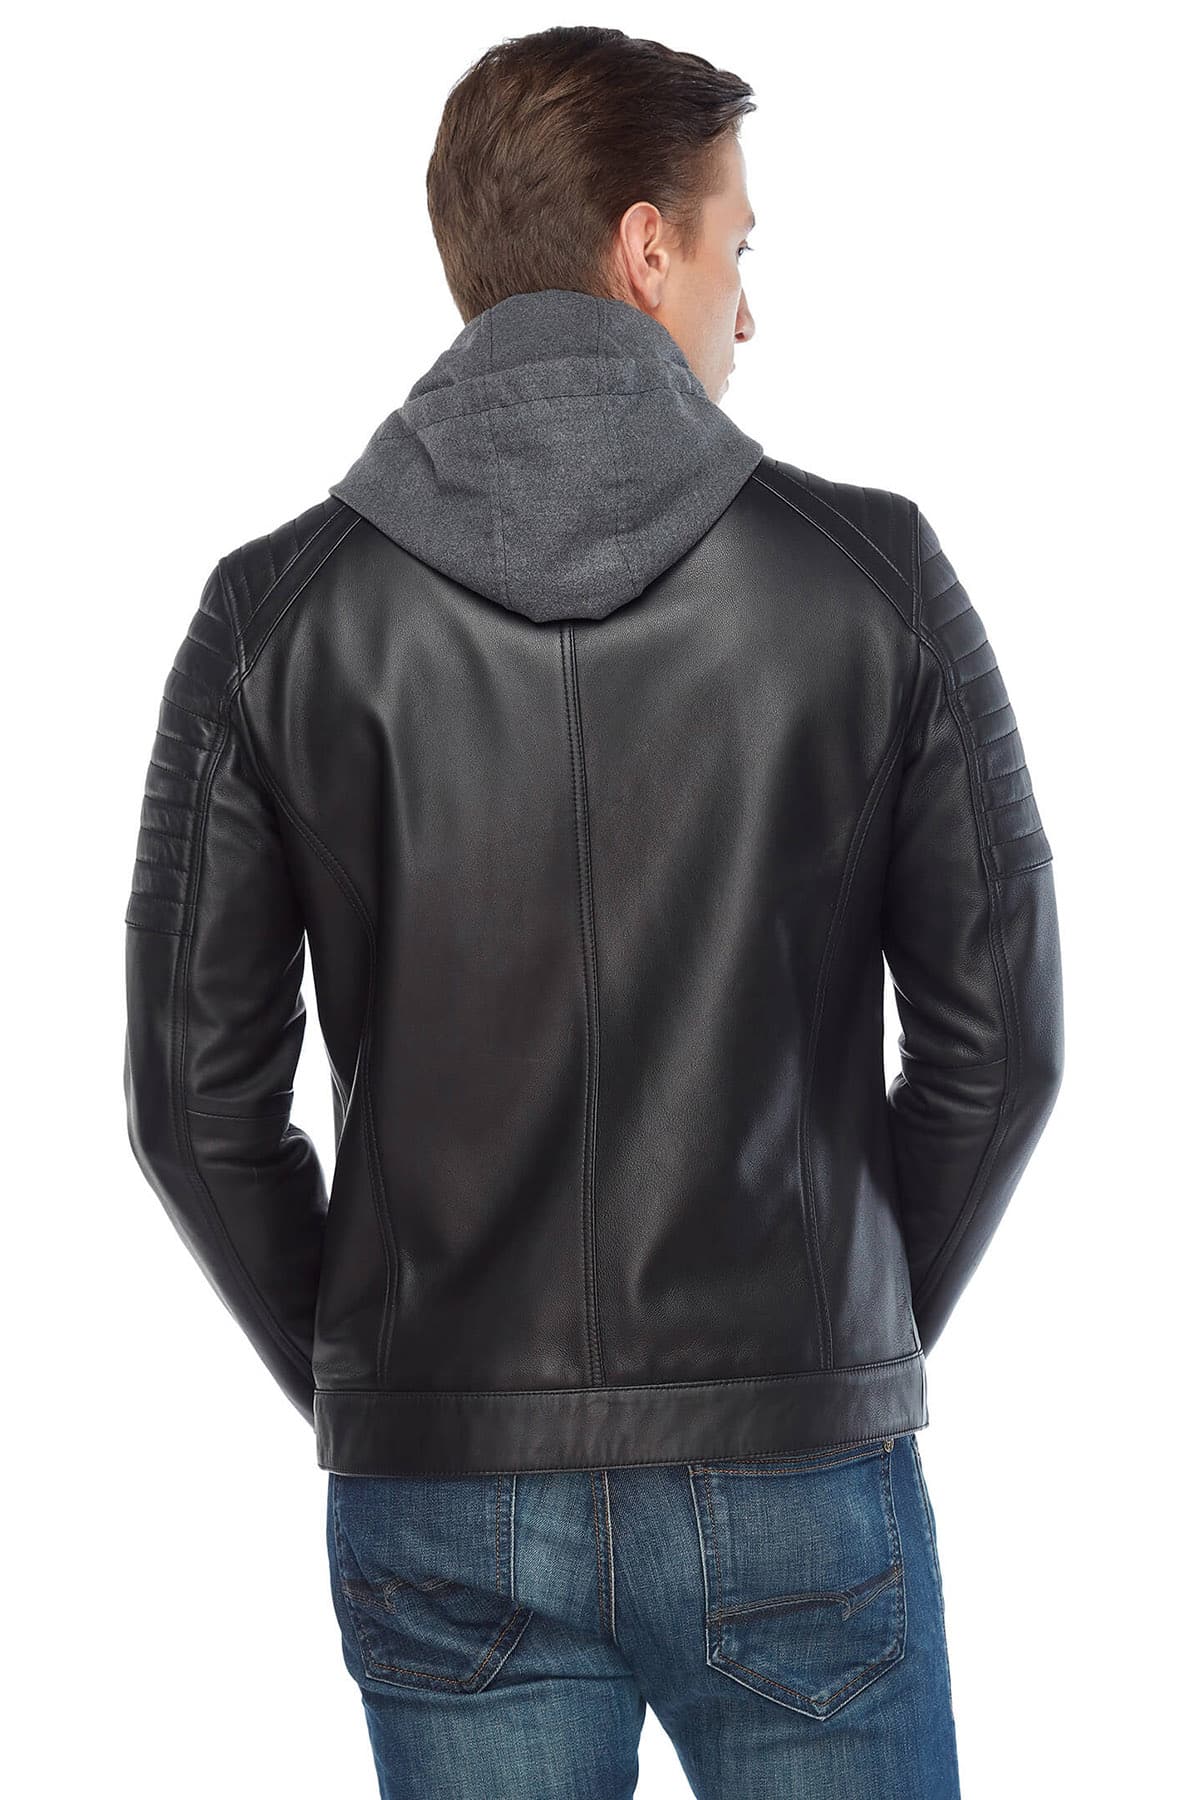 Mahir Bajramoski Men's 100 % Real Black Leather Hooded Jacket